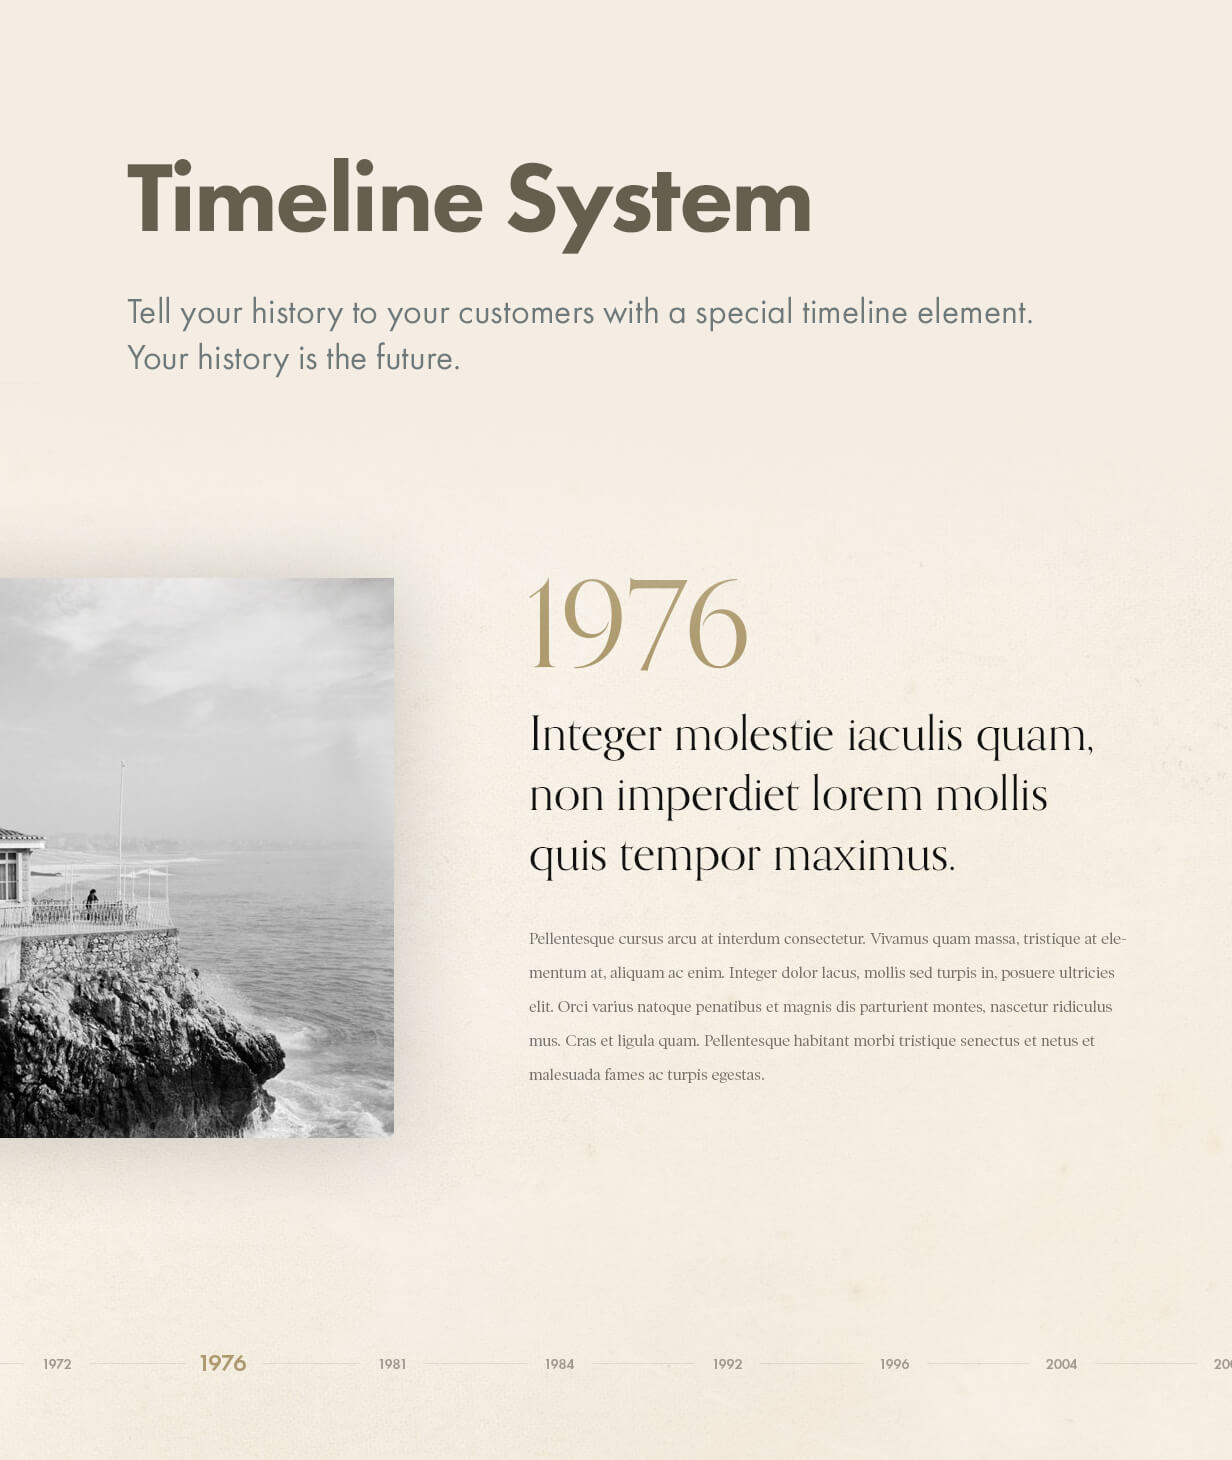 Timeline system